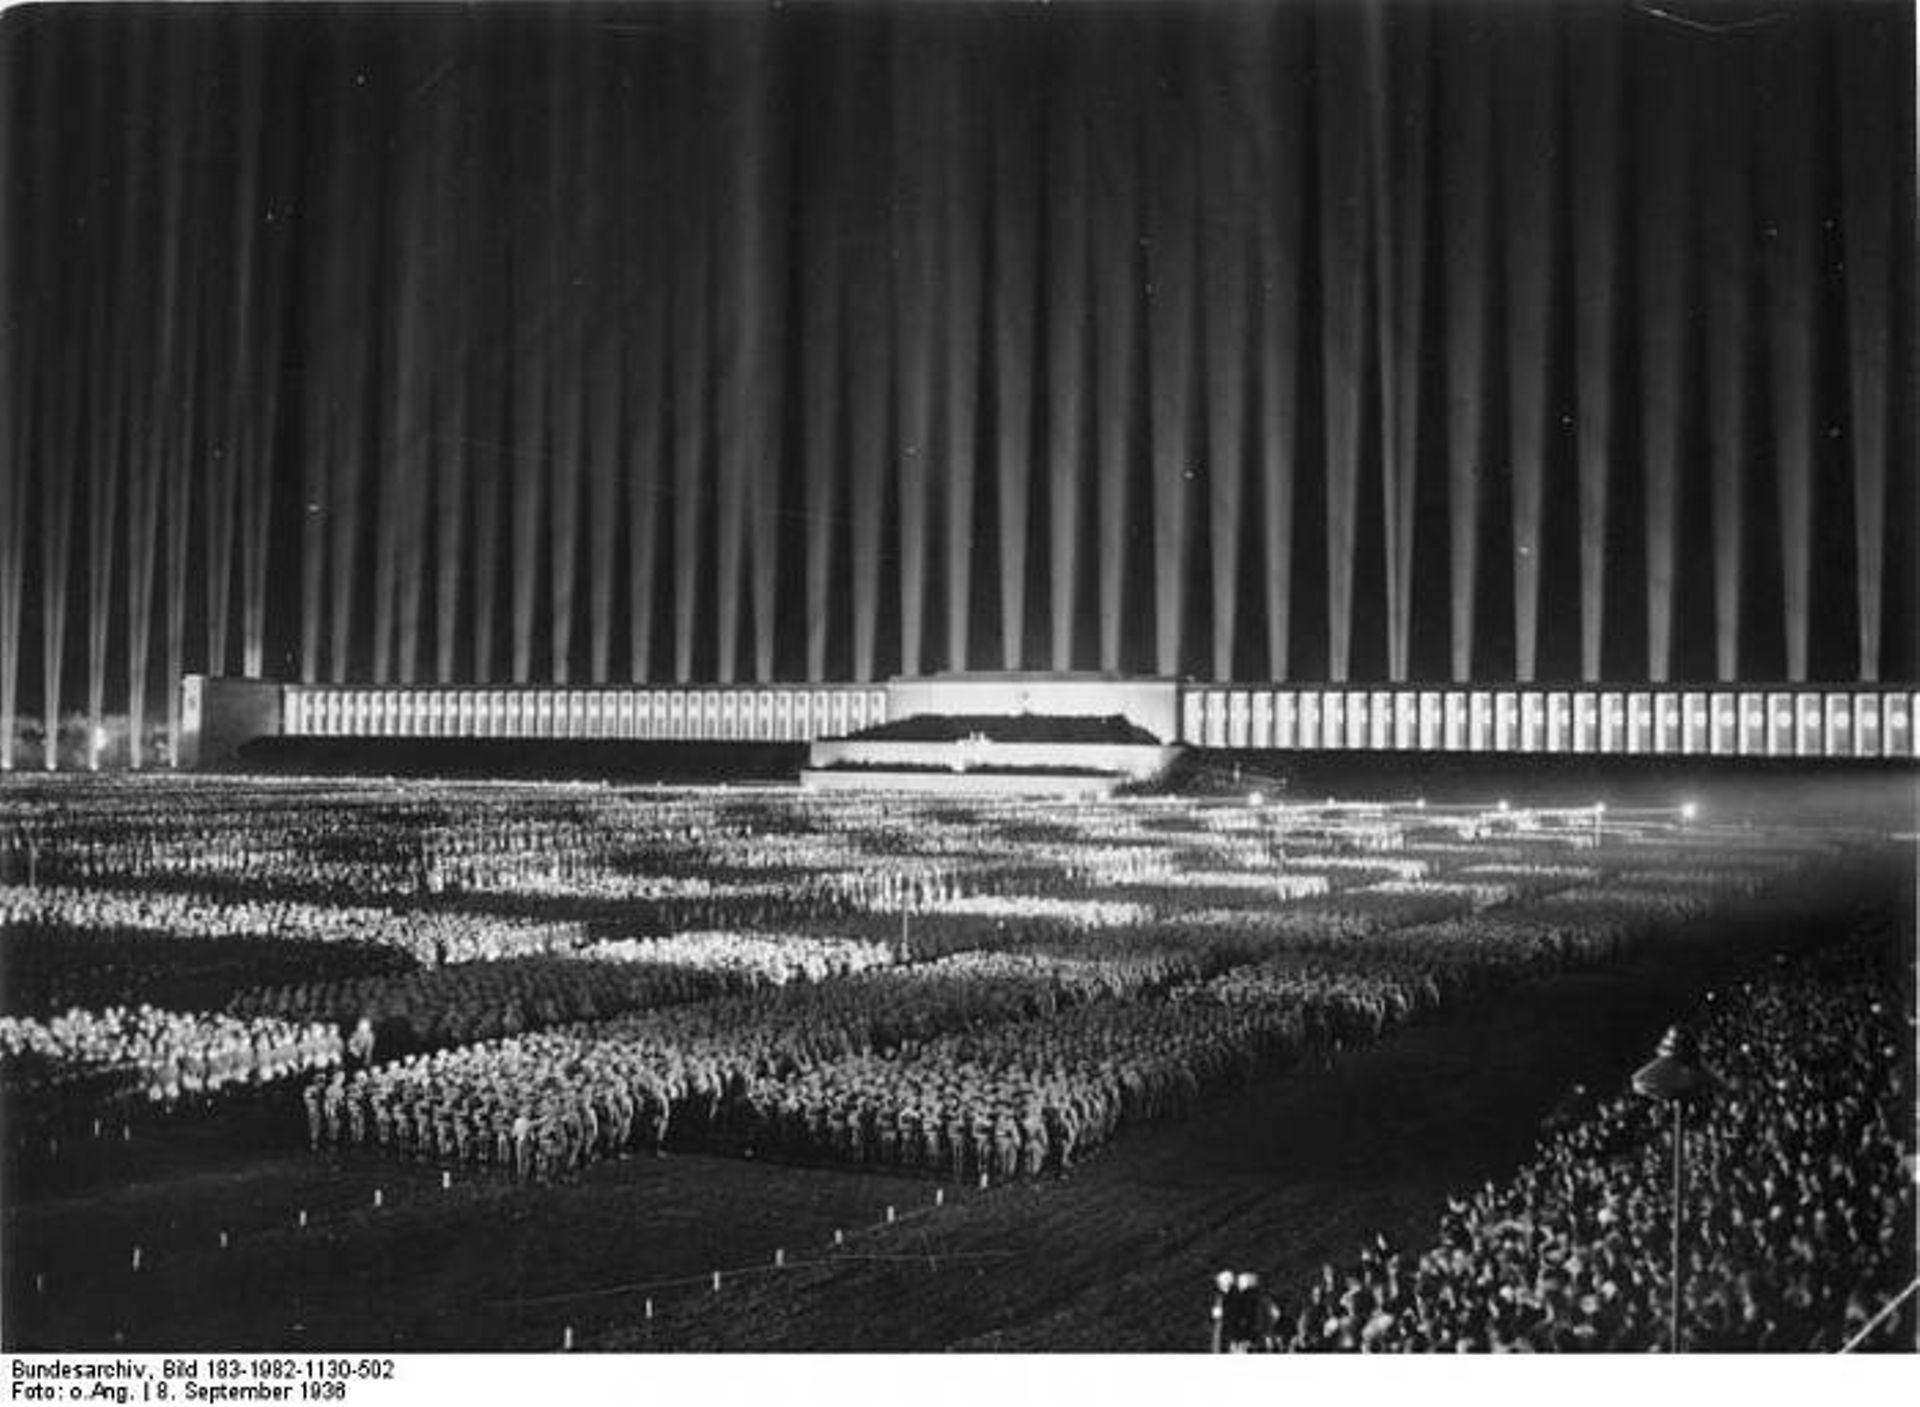 Une manifestation nocturne, le 8 septembre 1936, avec la "cathédrale de lumière" d’Albert Speer.